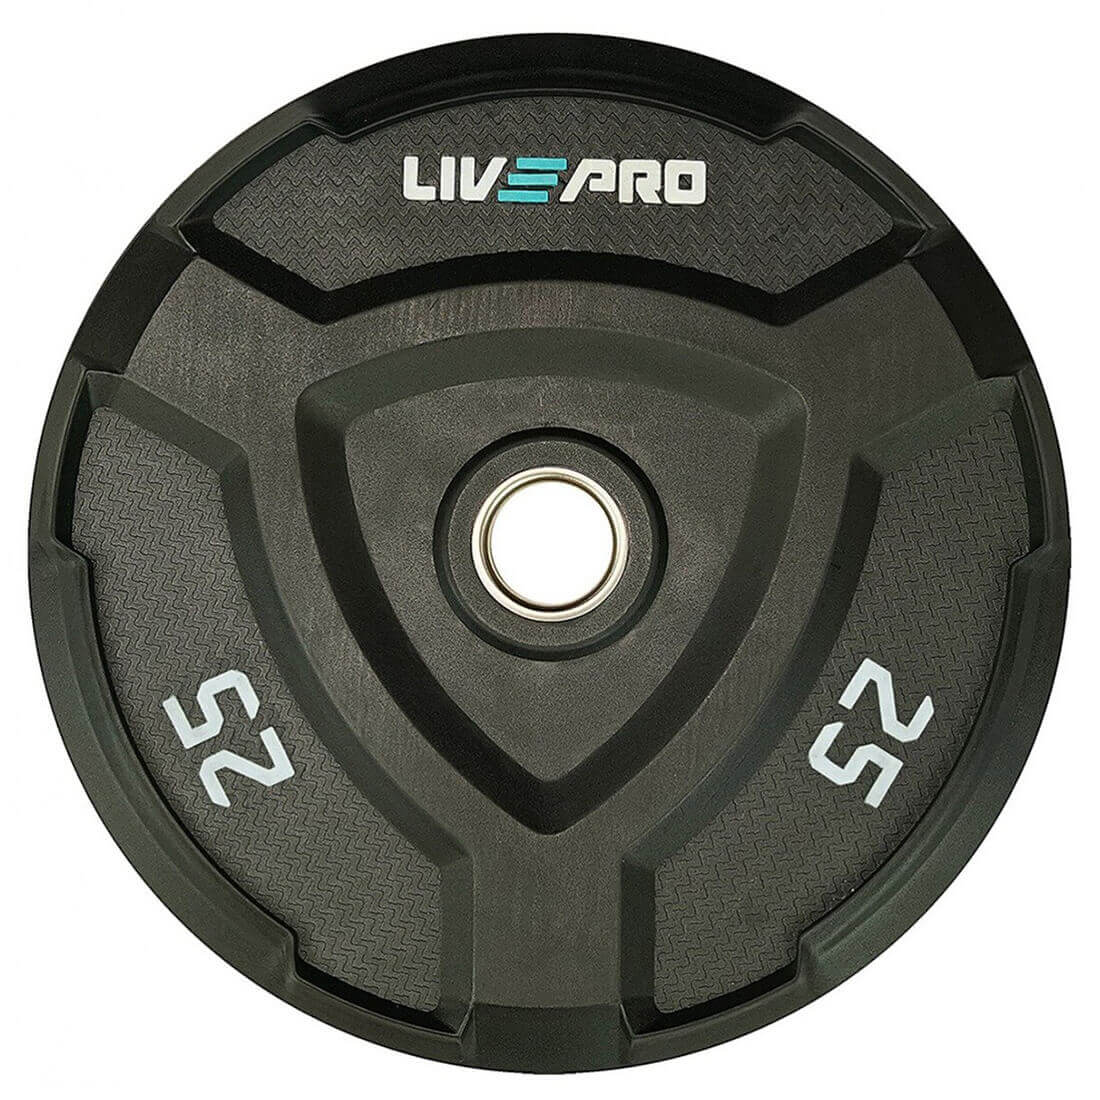 Livepro Rubber Bumper Plates 25kg - Sold As Pair